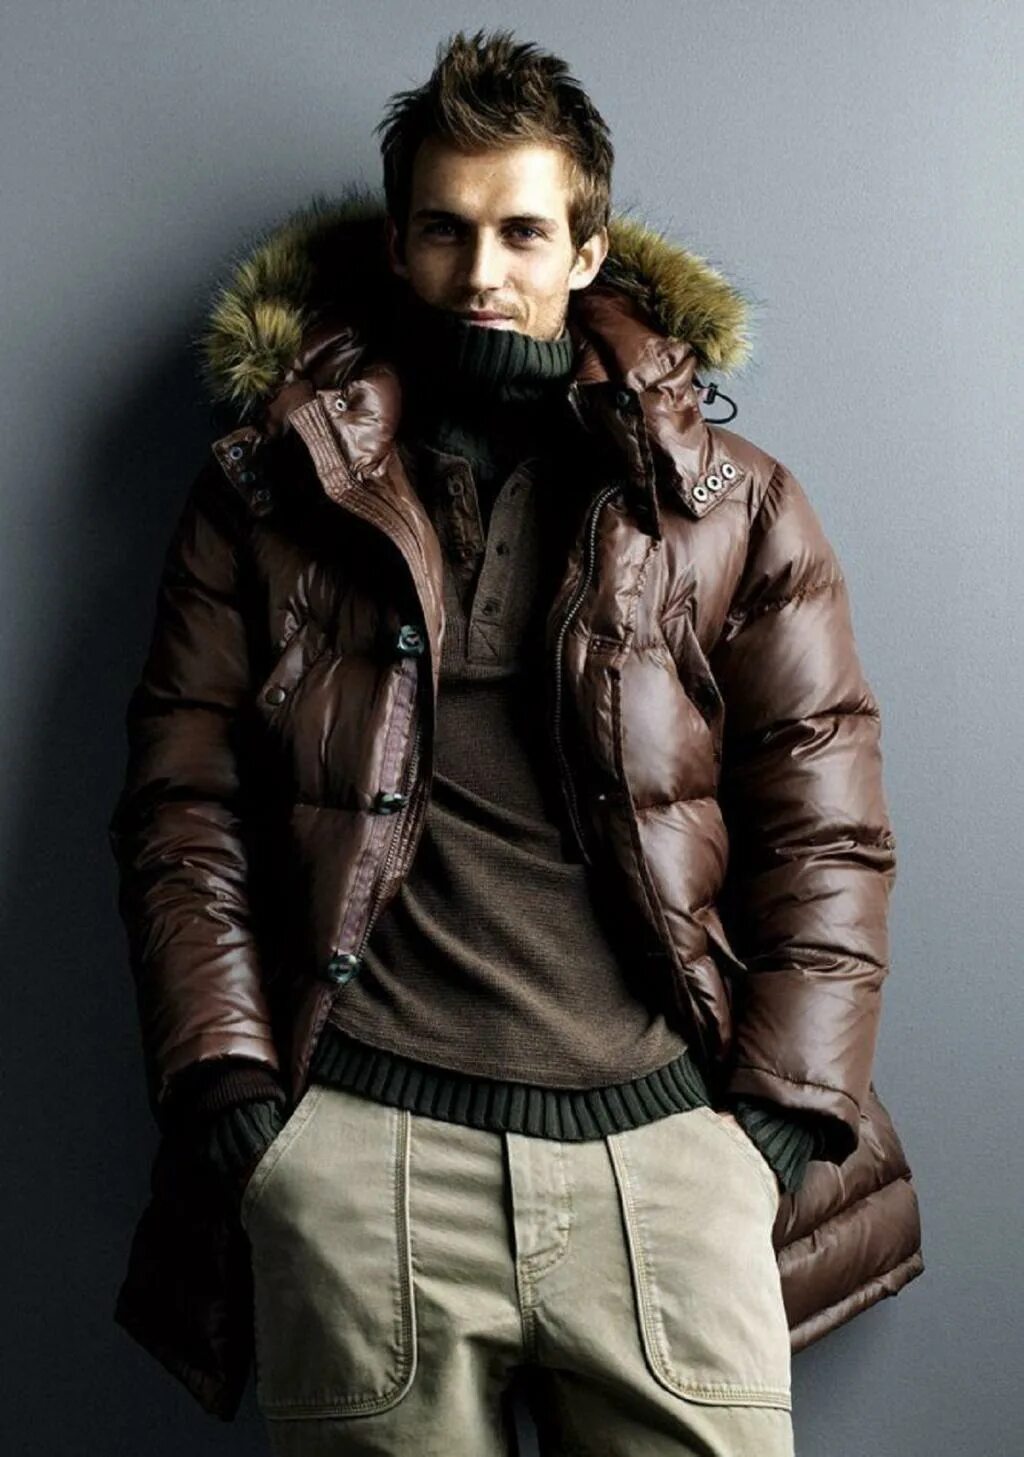 Мужское одежда зима. Зимняя одежда для мужчин. Стильная зимняя одежда для мужчин. Мужской зимний стиль одежды. Модные мужские куртки.